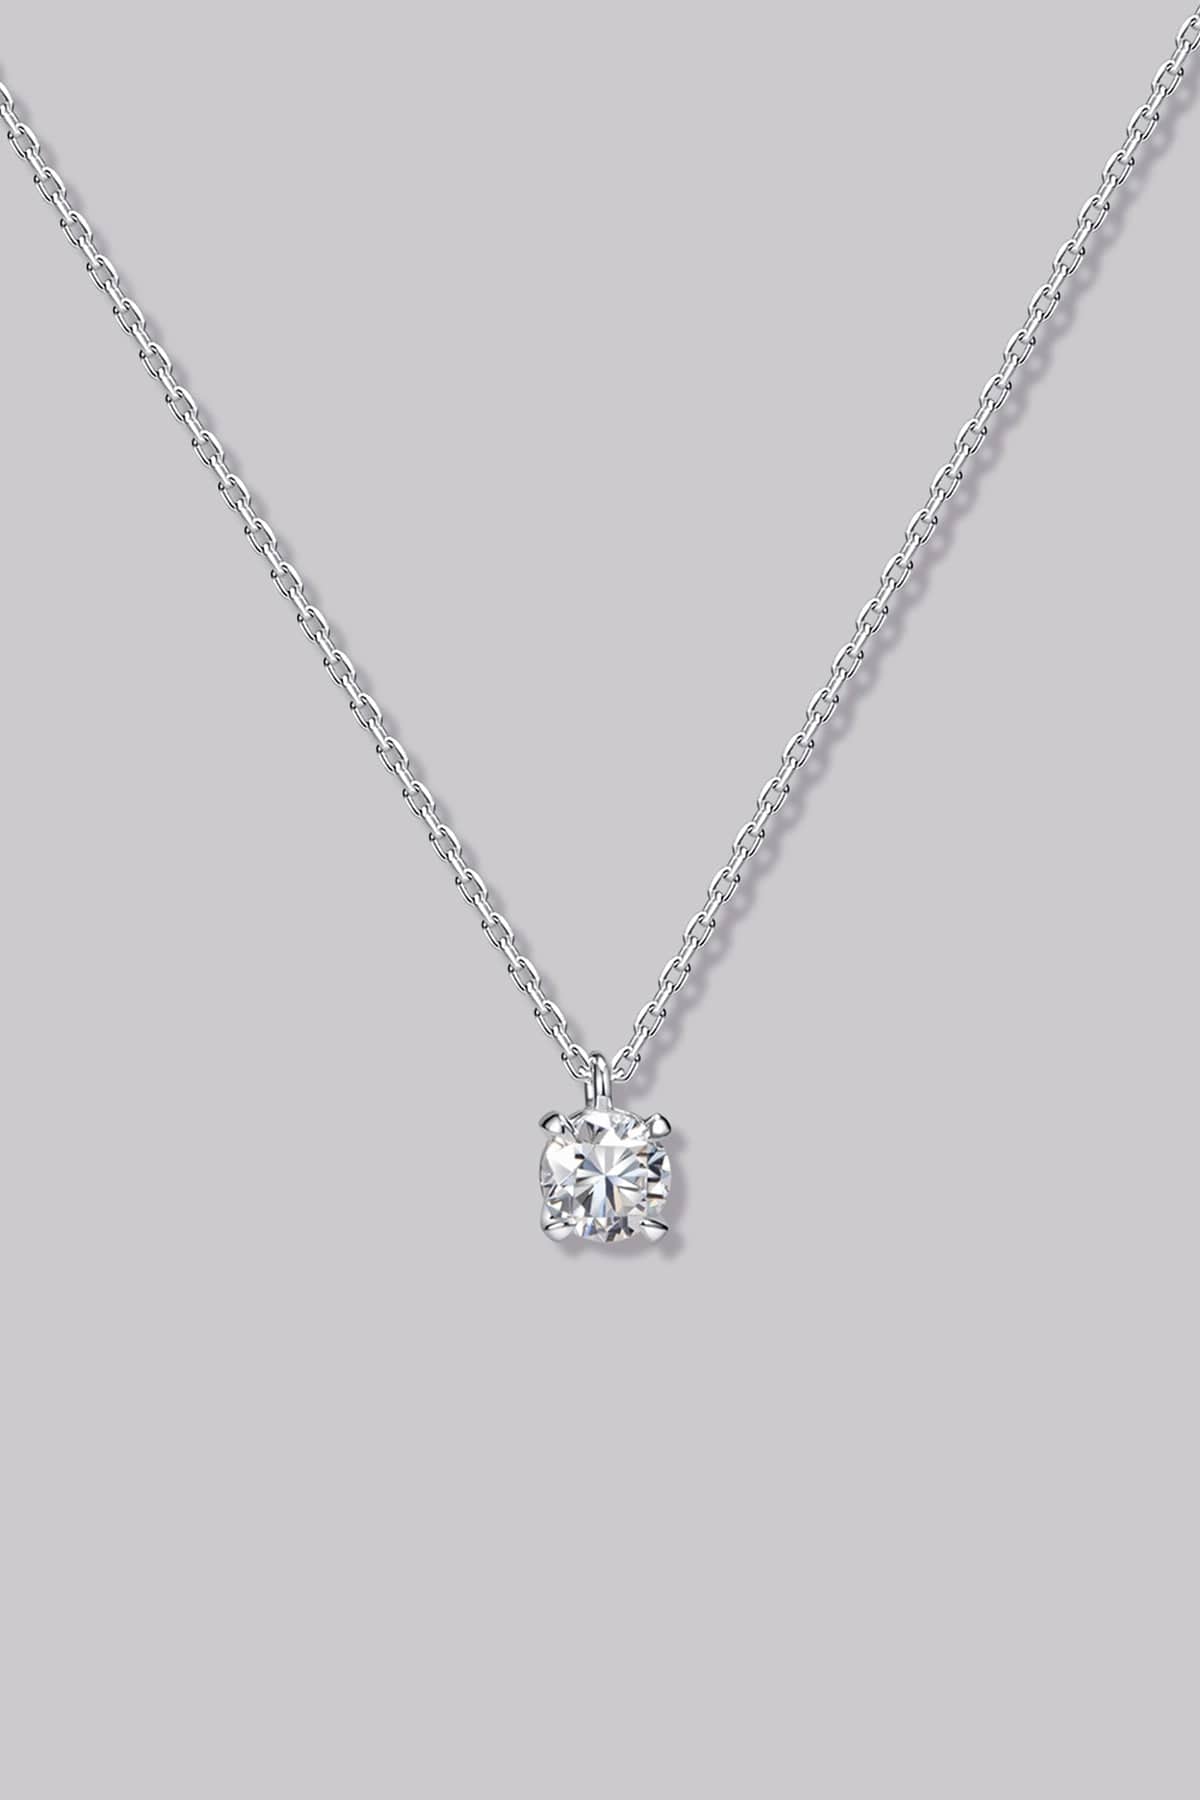 Solitaire Round Diamond Necklace (0.25ct) - APM Monaco